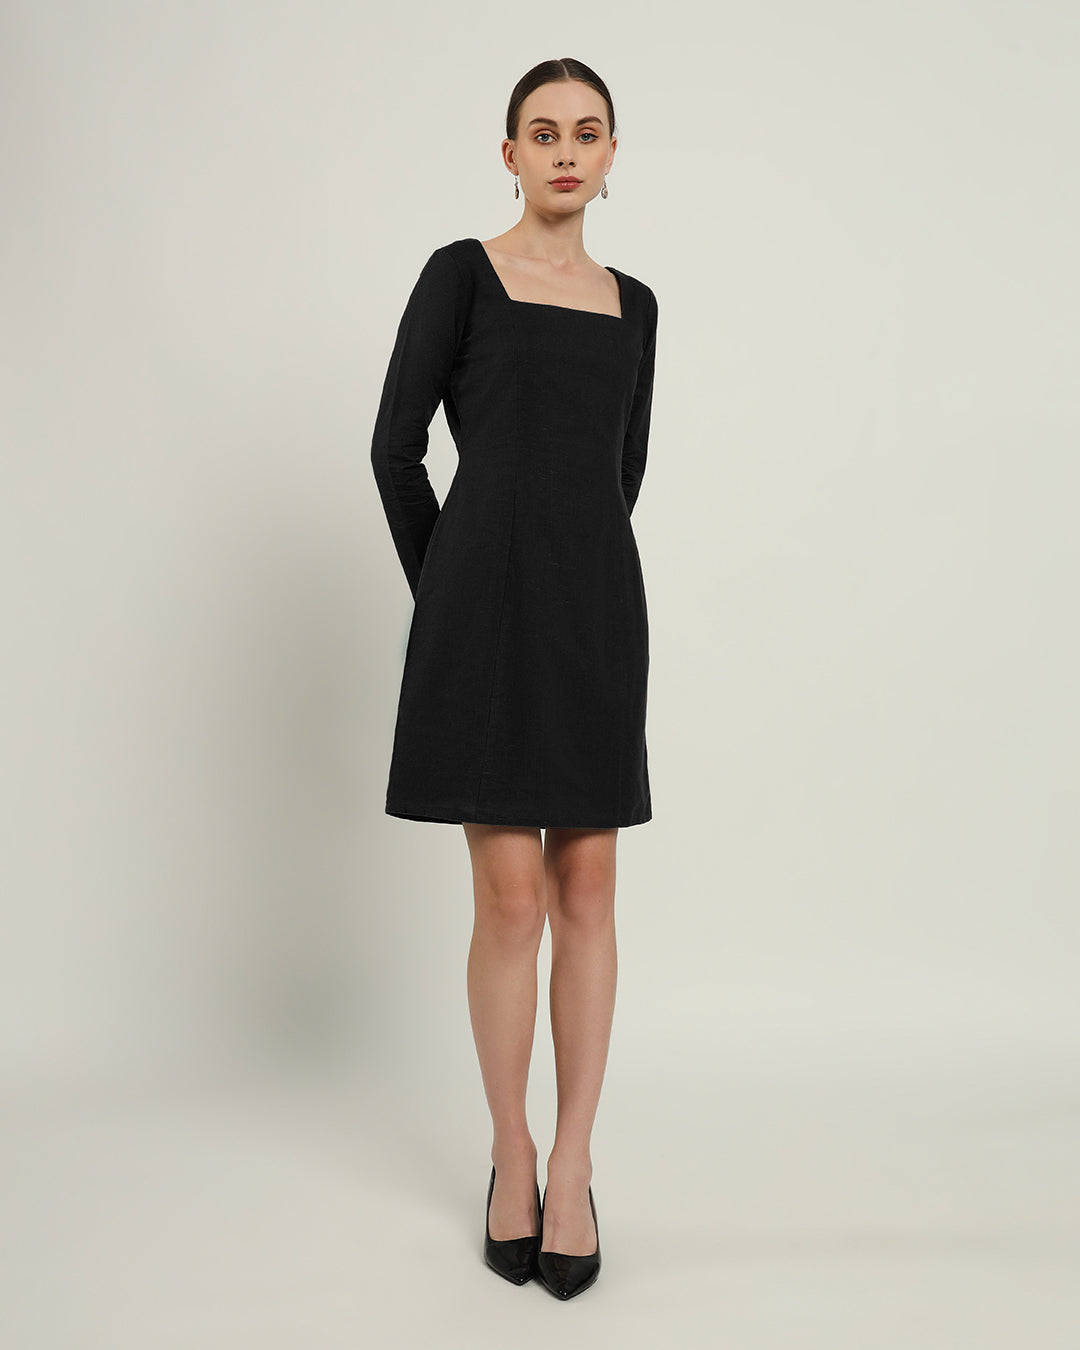 The Auburn Noir Linen Dress